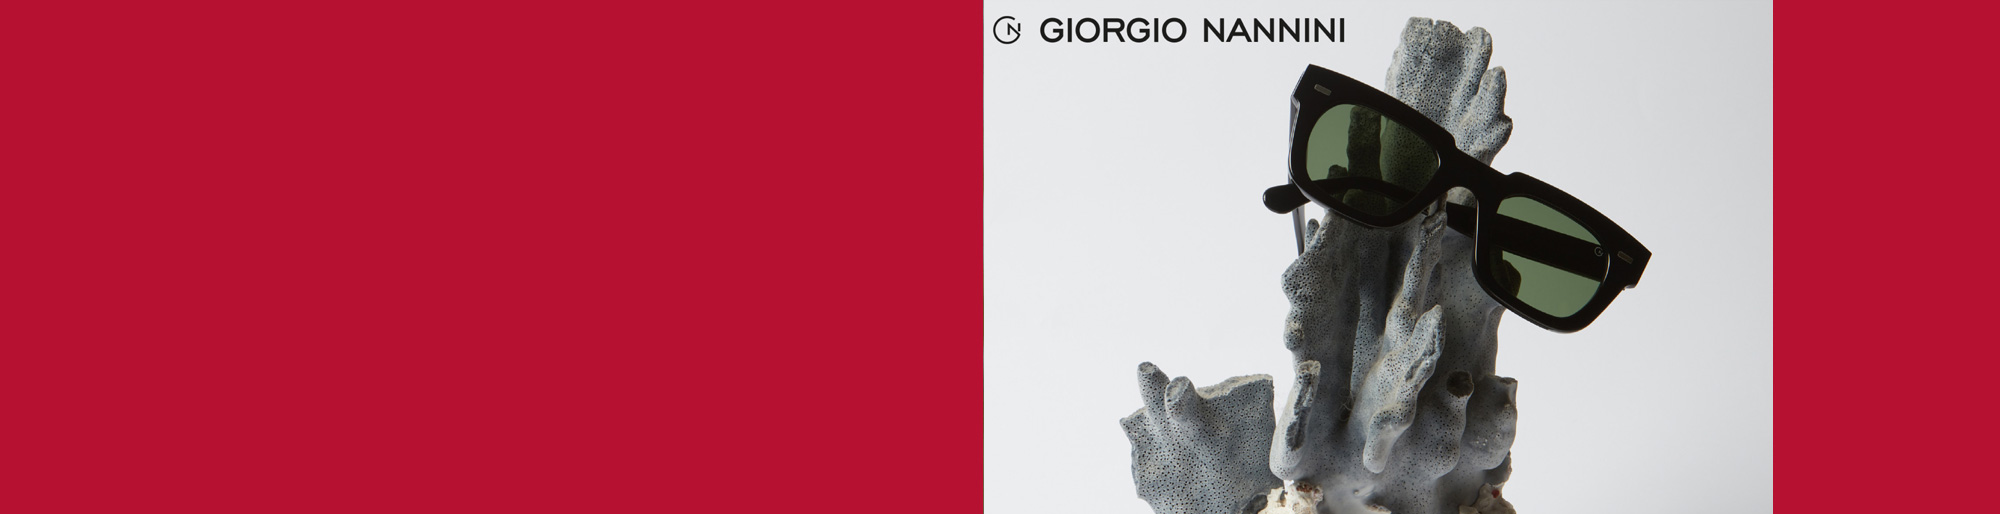 Giorgion Nannini Sonnenbrillen bei Optik Adam in Iserlohn